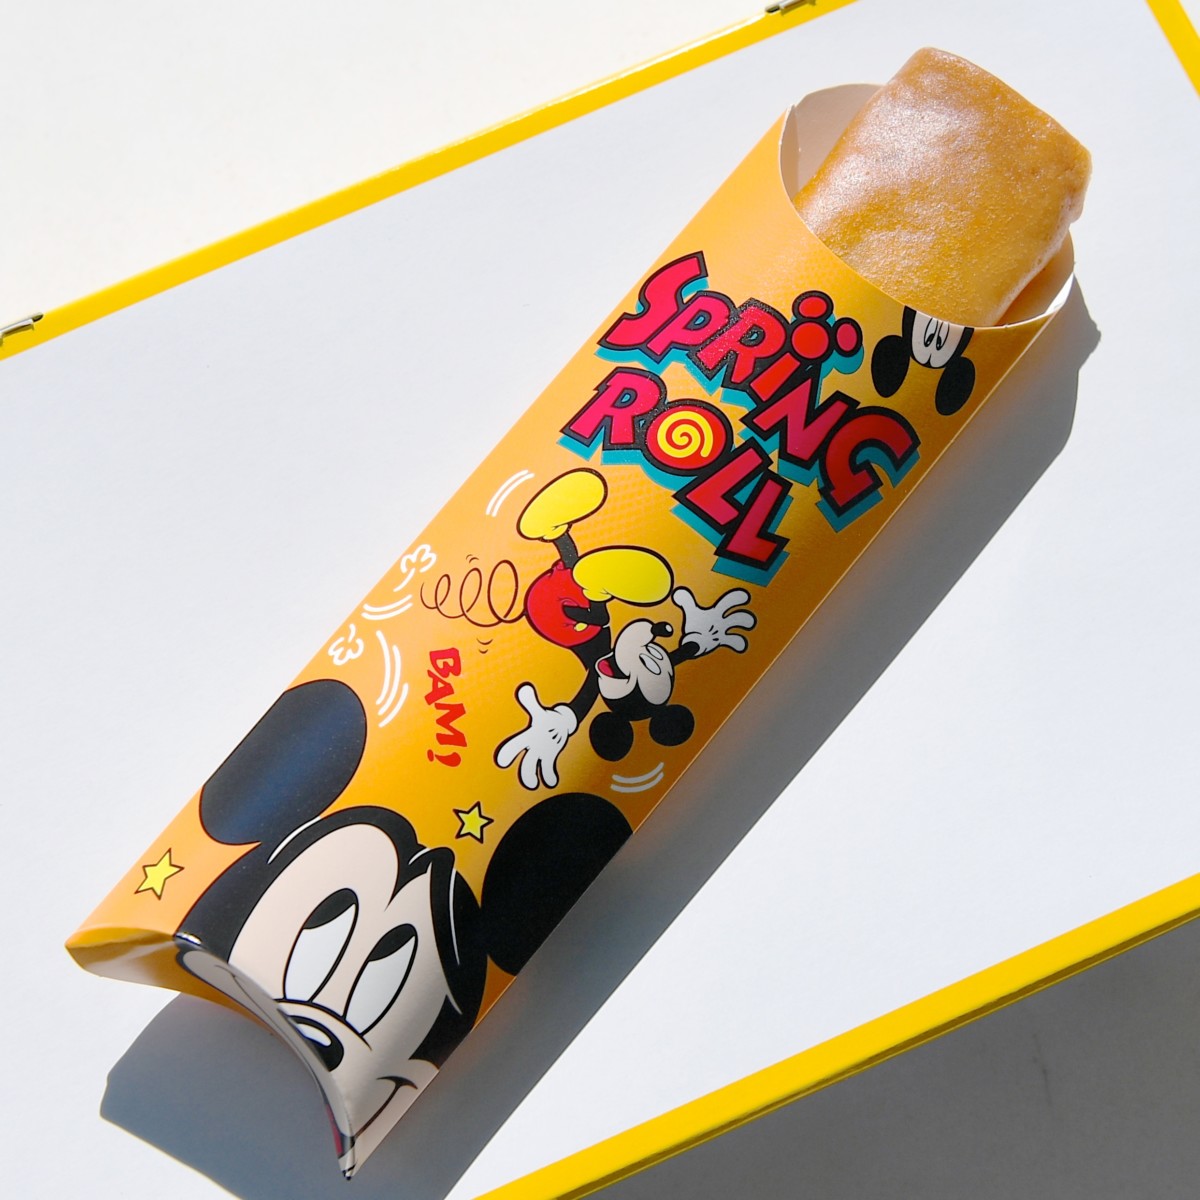 スプリングロール ピザ パッケージ バック エッグ シュリンプ ピザ味のスプリングロール 東京ディズニーランド ミッキーのトレーラー グランドメニュー